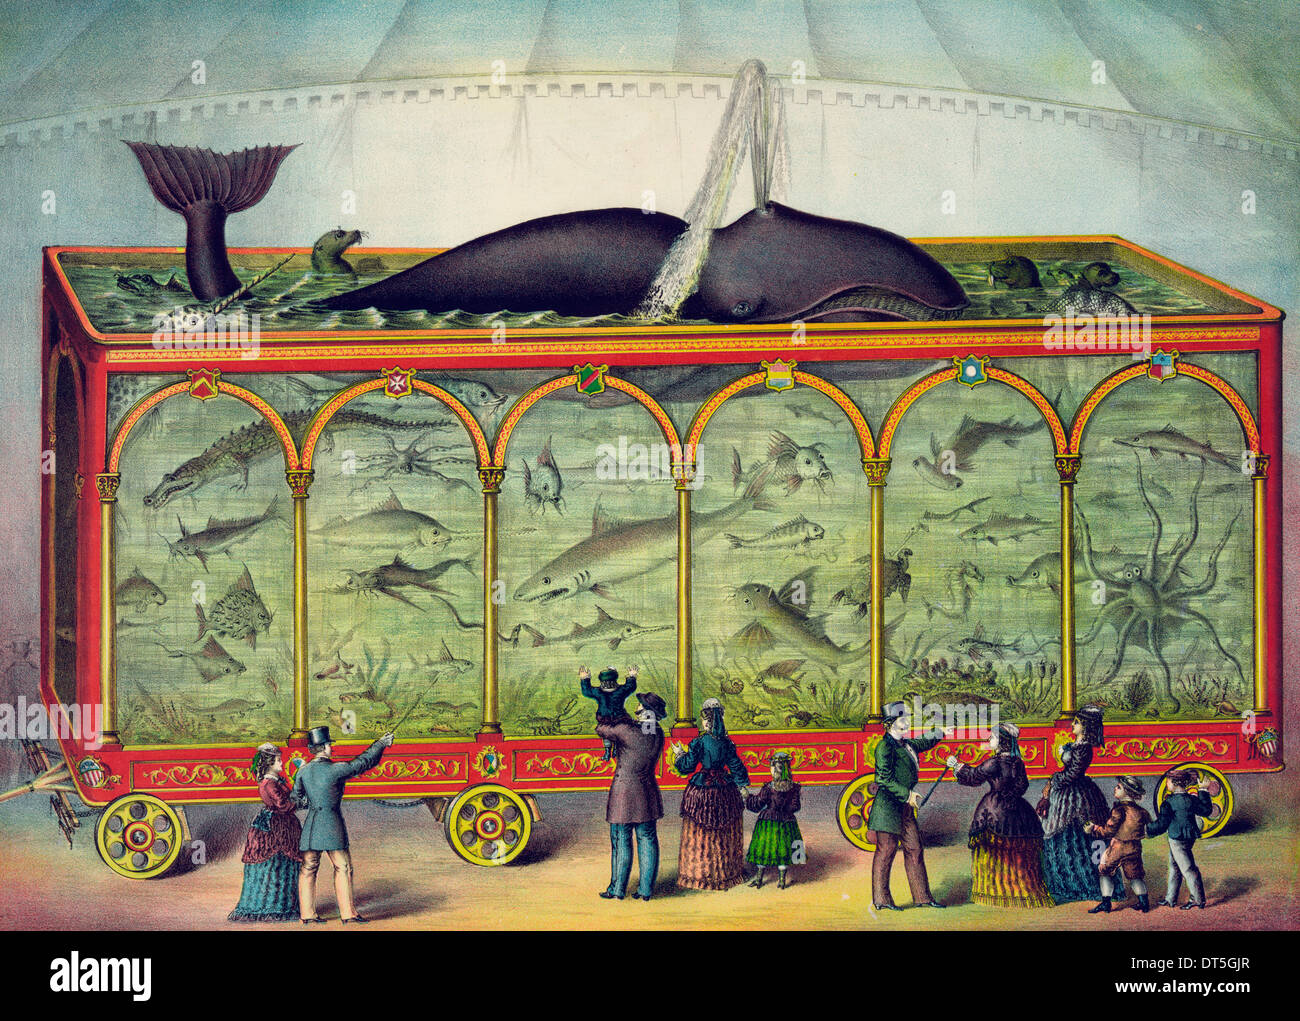 L'Aquarium - Aquarium de voyage avec les spectateurs à la recherche sur, vers 1880 Banque D'Images